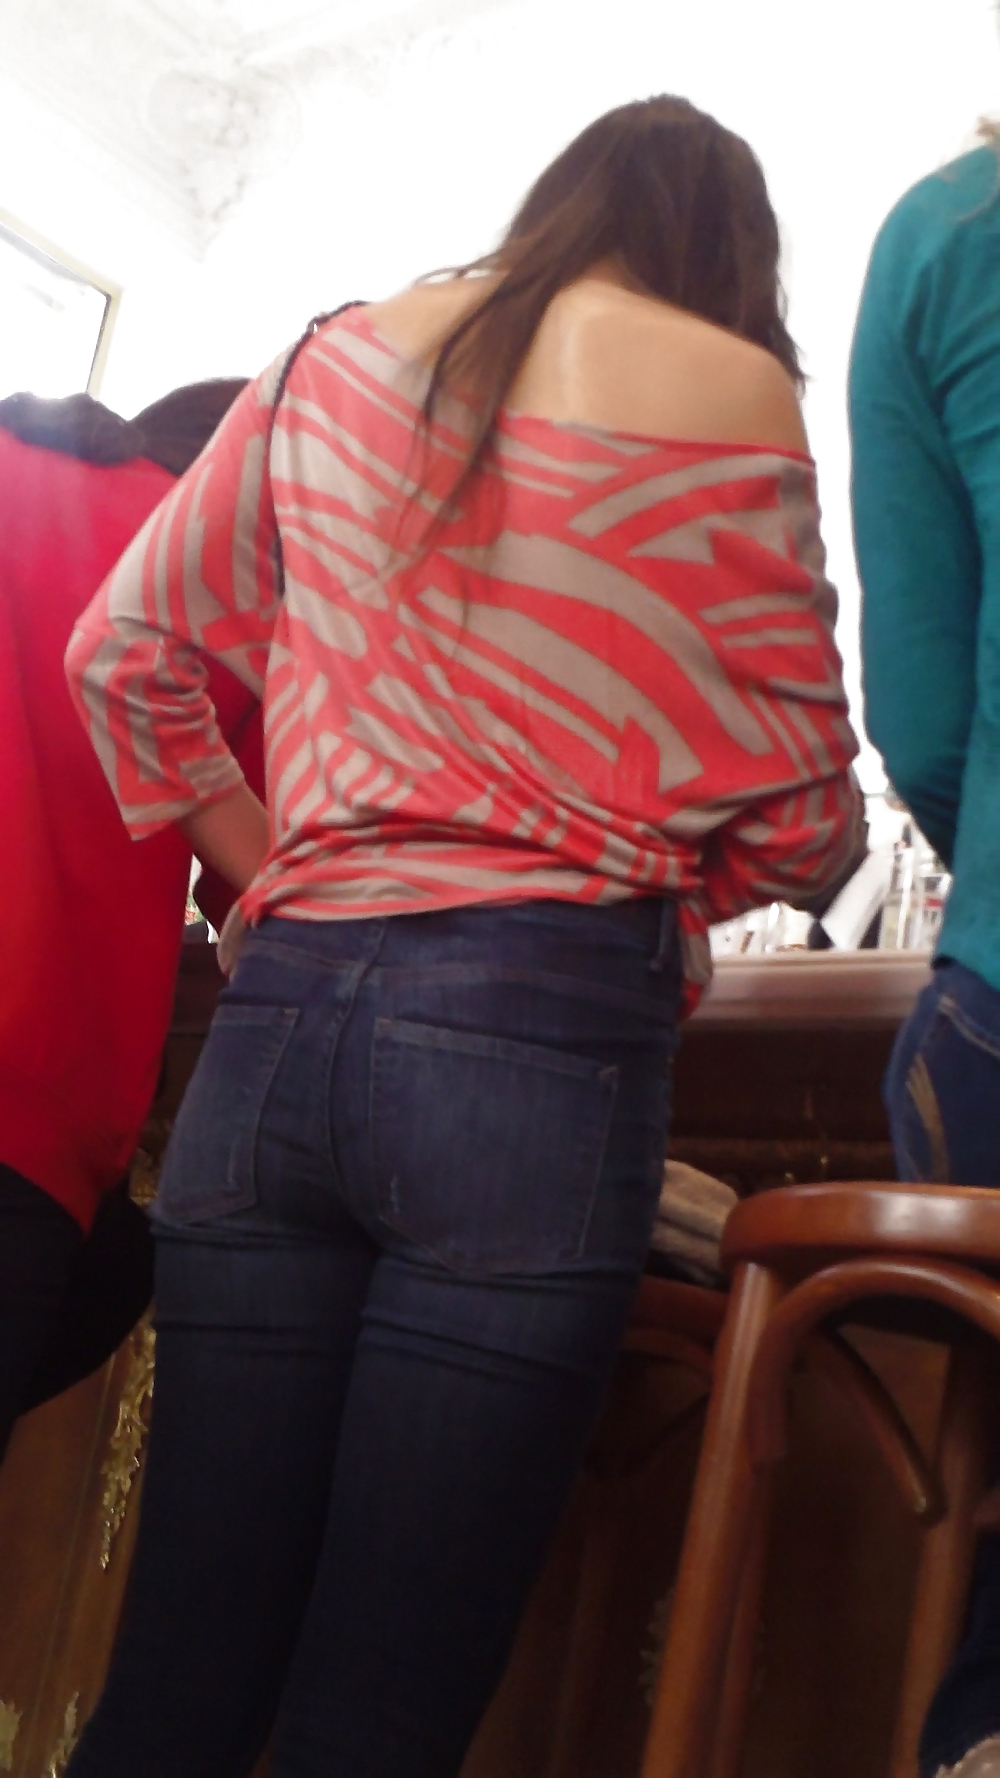 Popular teen girls butt & ass in jeans part 2 #24181005